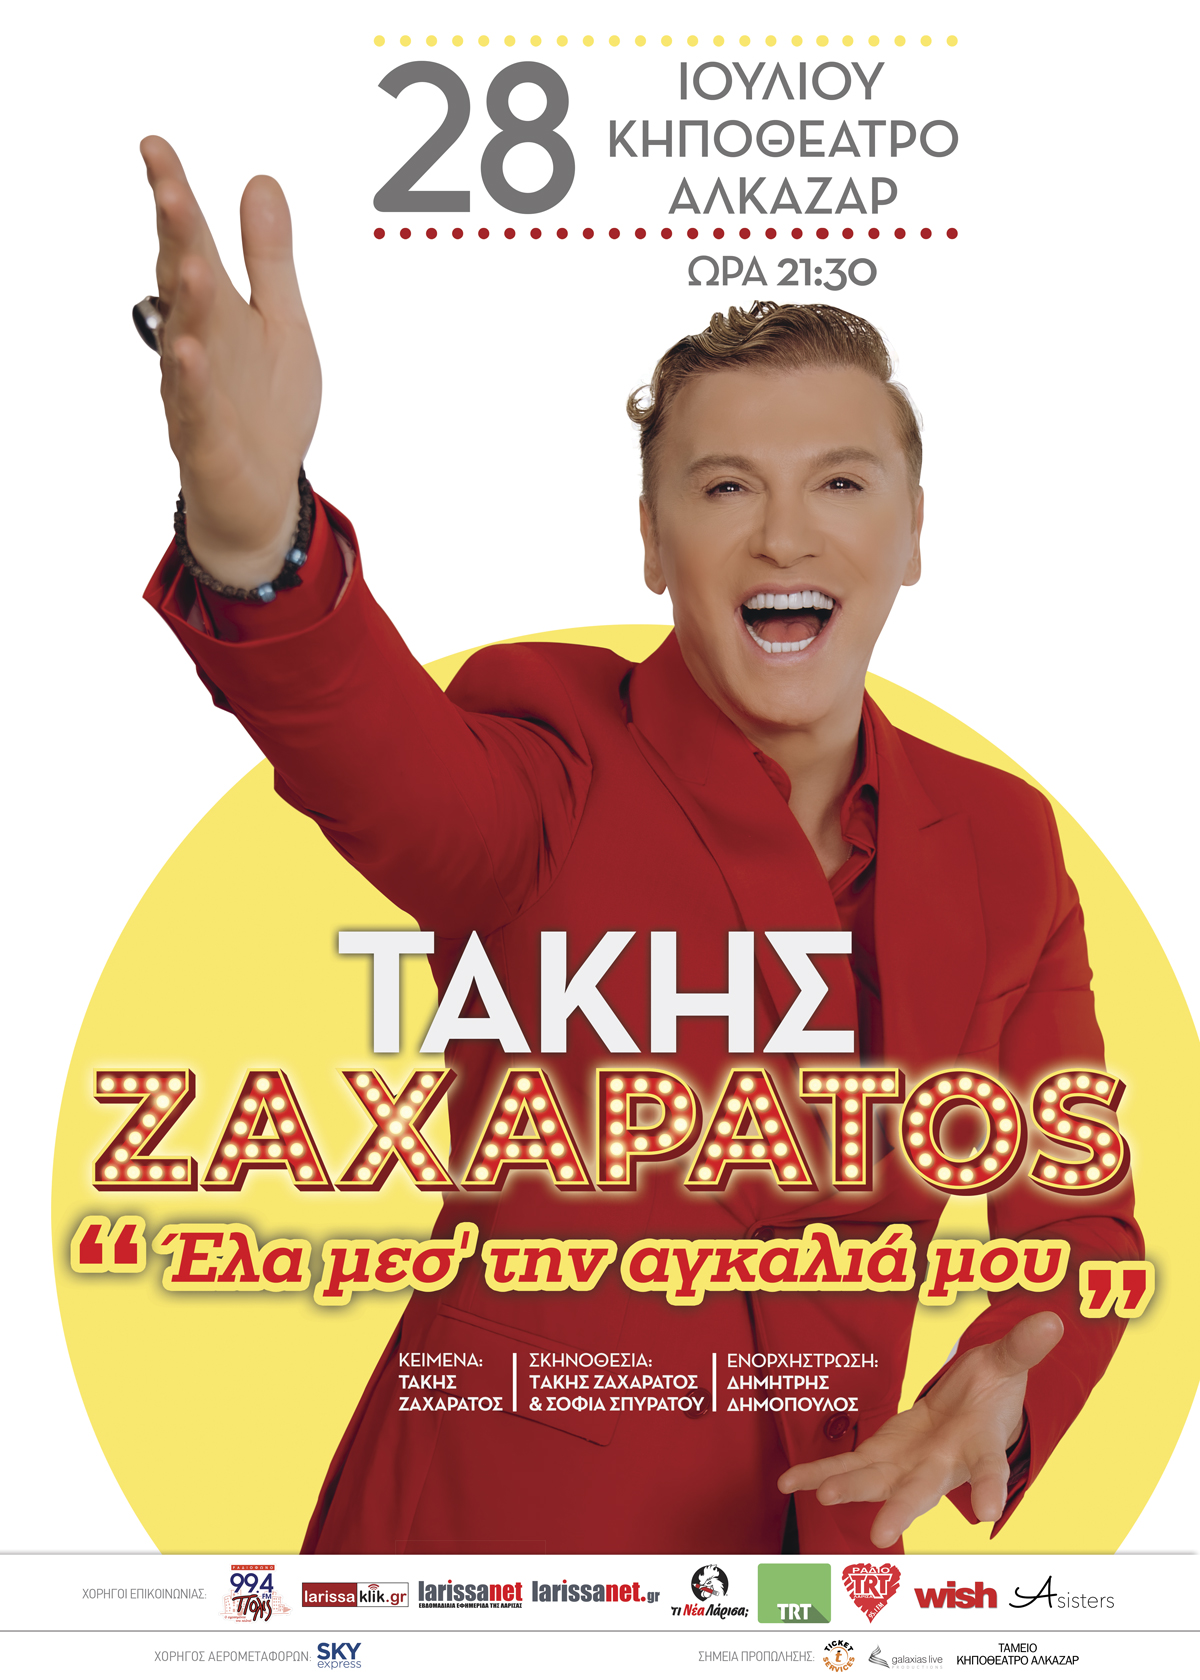 Takis Zacharatos4